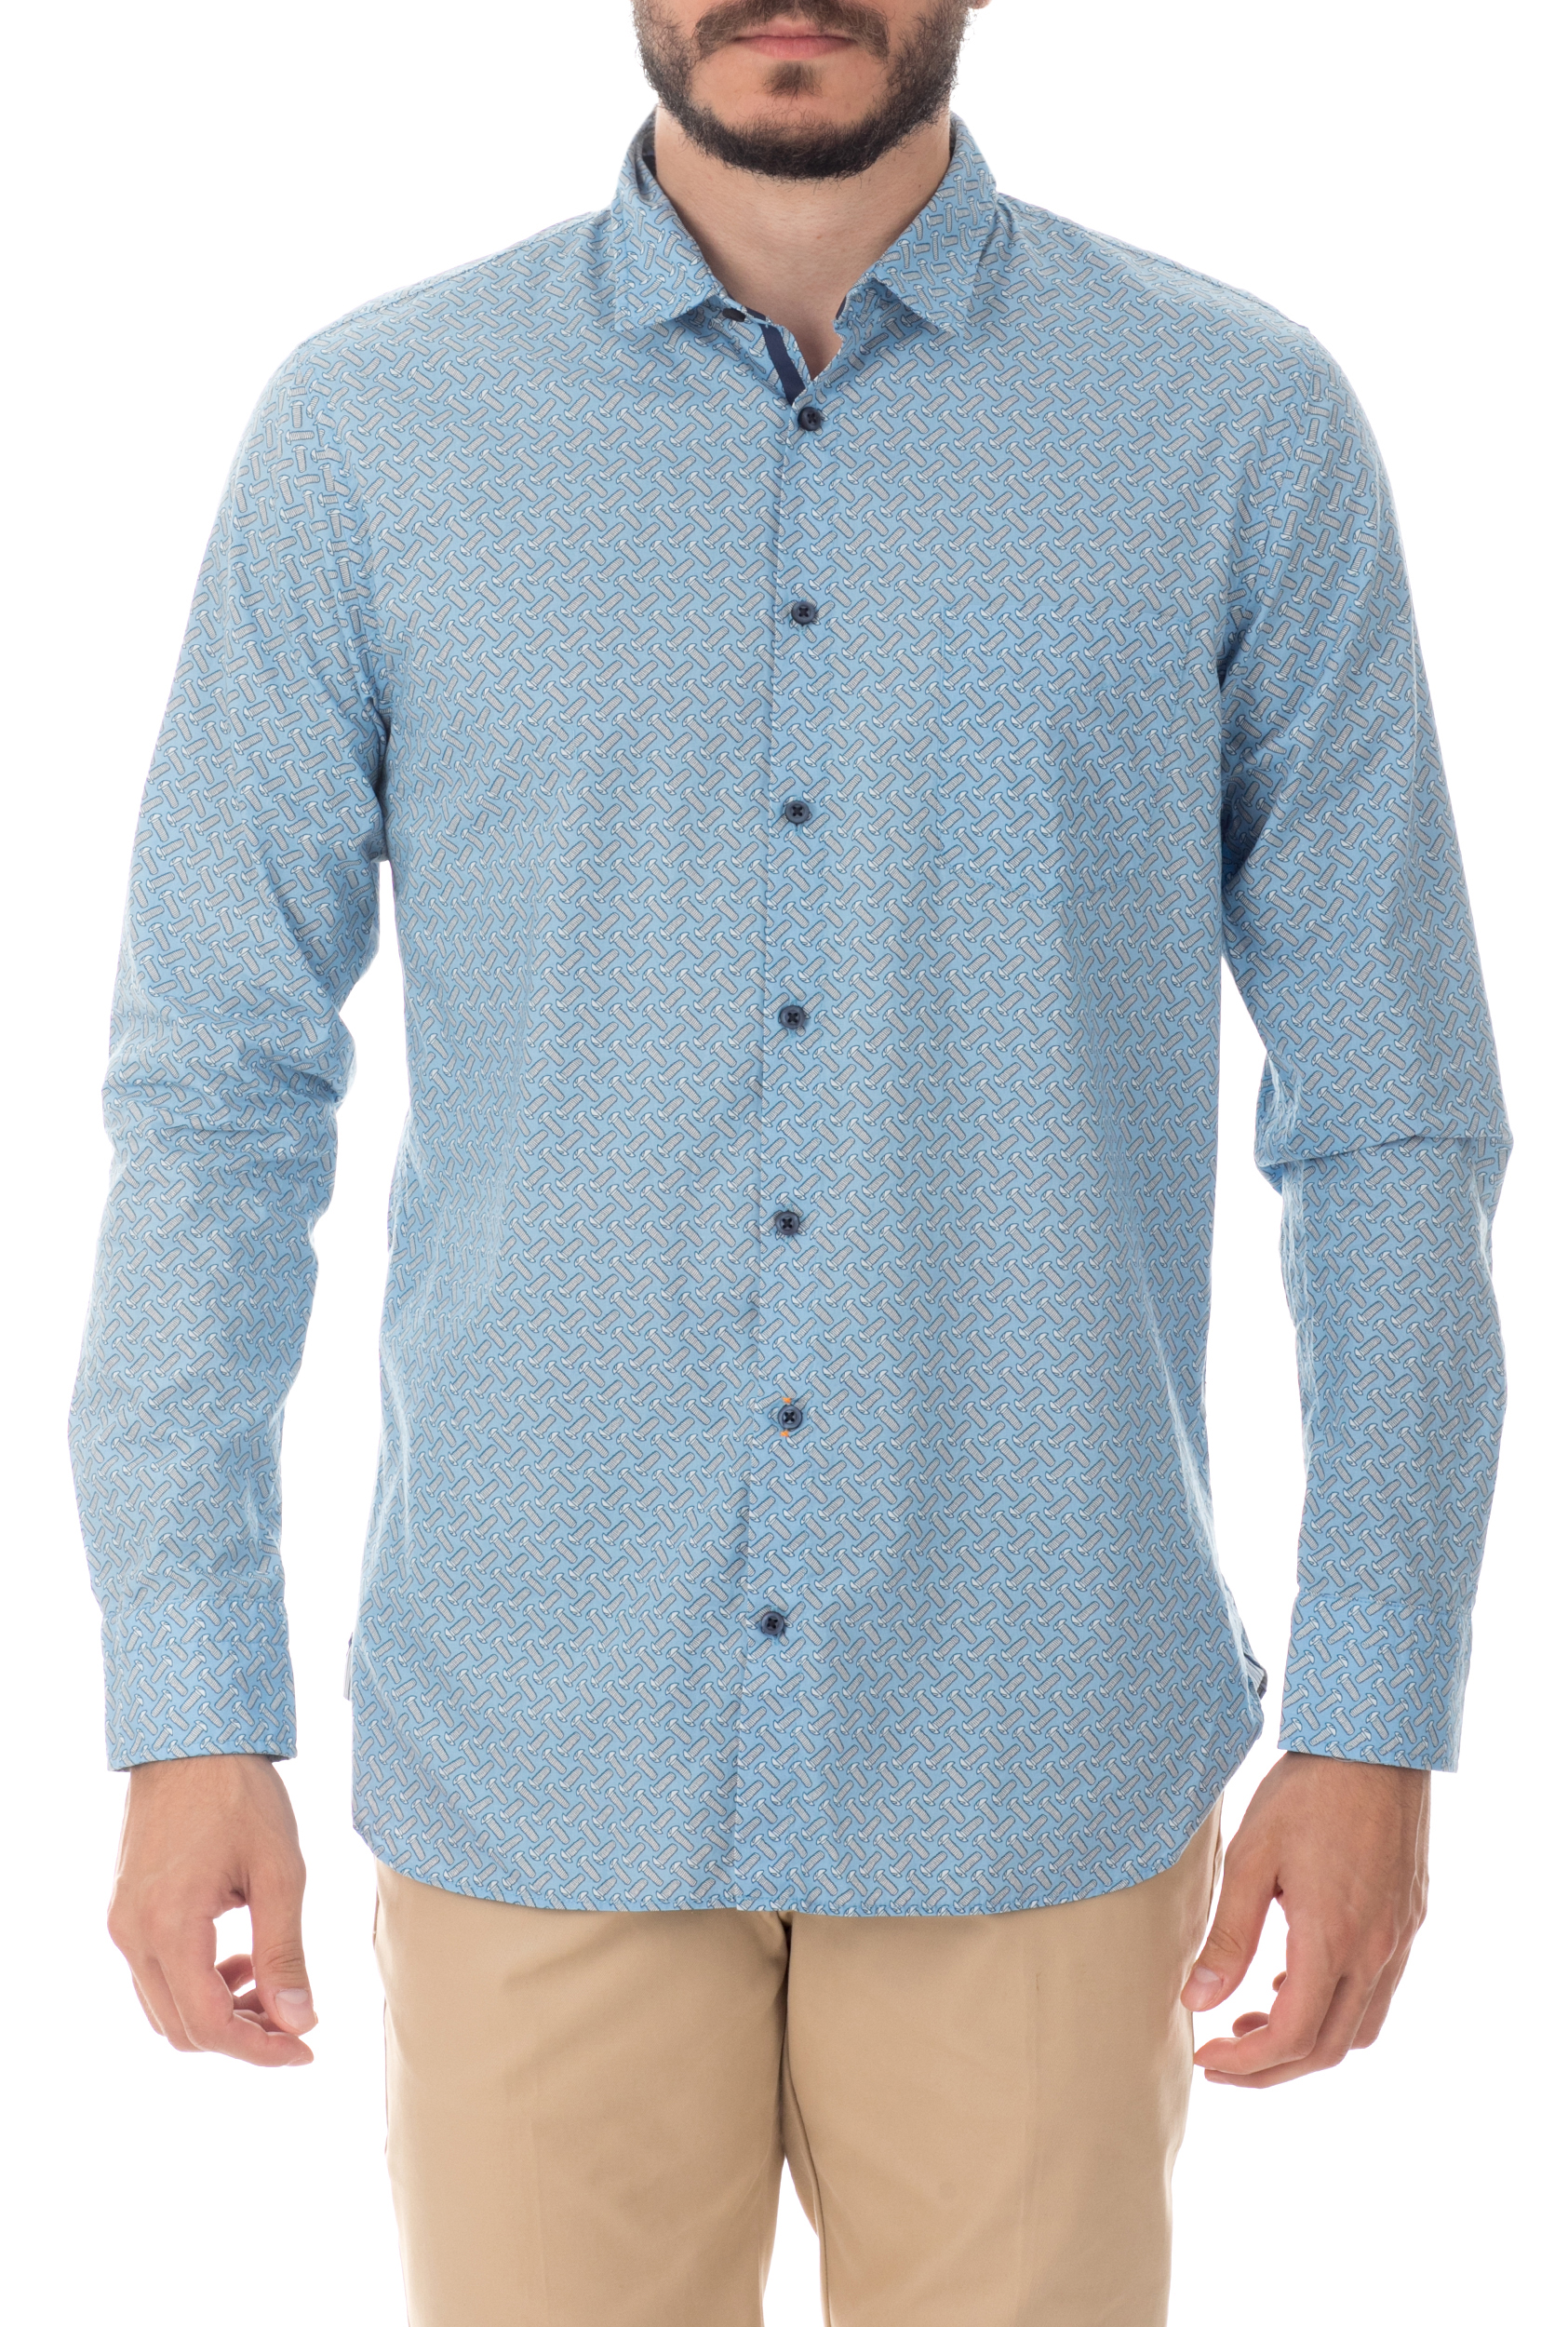 Ανδρικά/Ρούχα/Πουκάμισα/Μακρυμάνικα BOSS - Ανδρικό μακρυμάνικο πουκάμισο BOSS μπλε